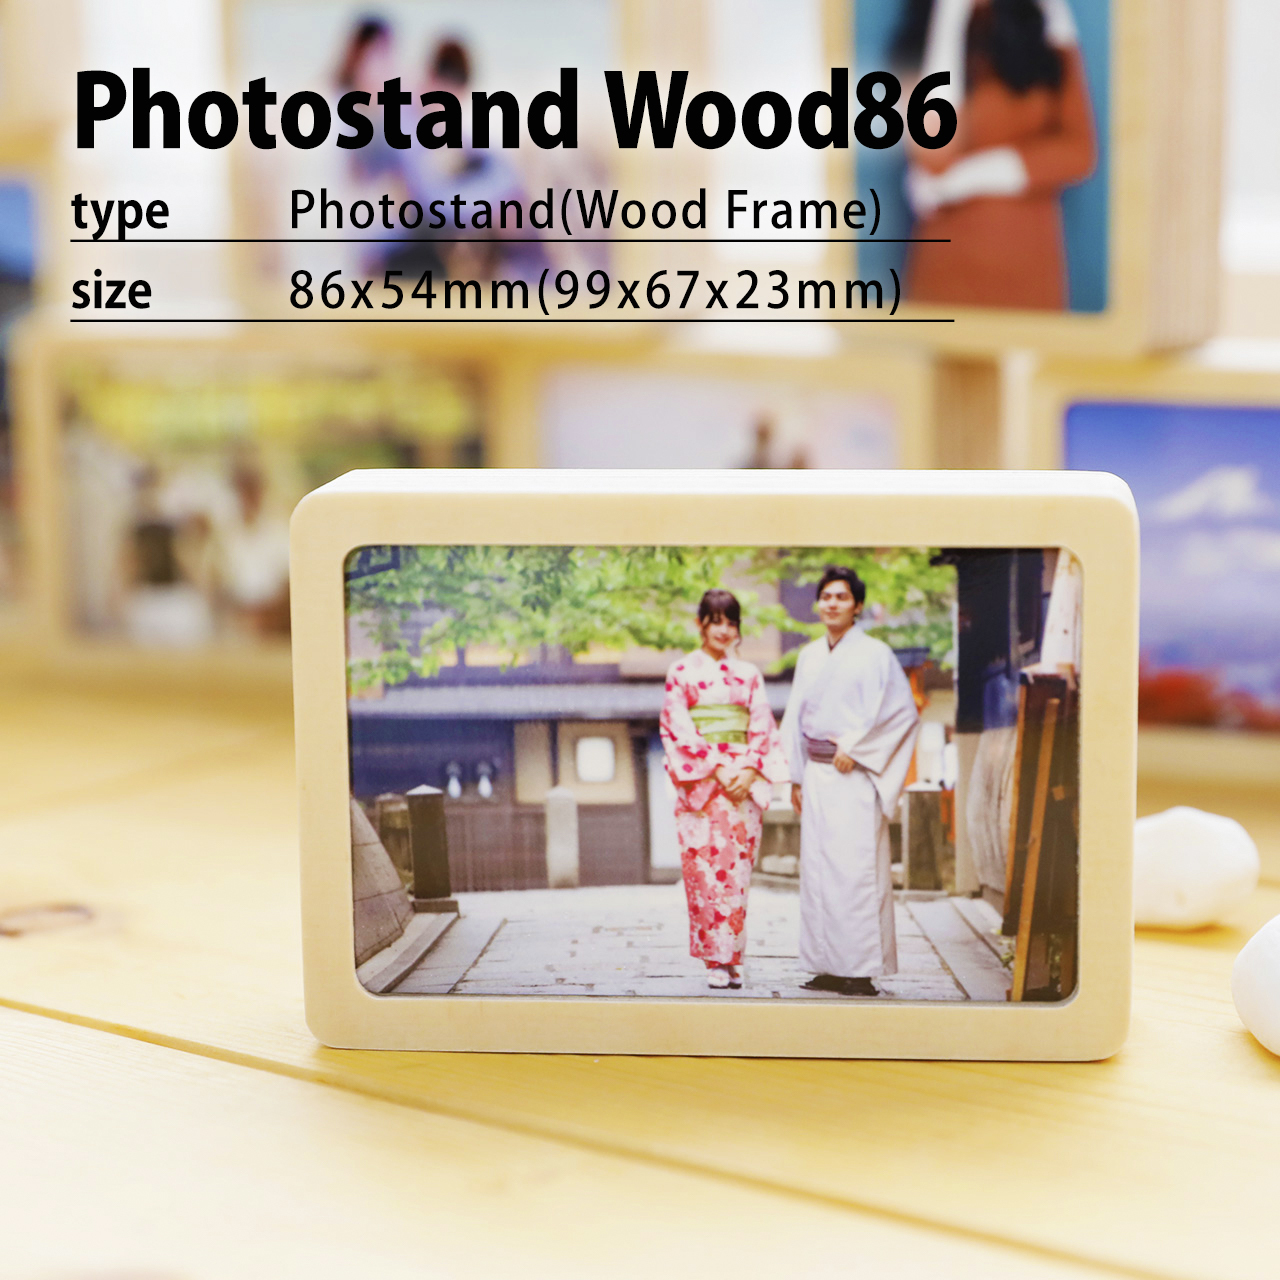 オーダーフォトフレーム木材86 木目フレームs ウッドフォトフレーム 写真プリント すまでこオンラインショップースマホ の写真でオリジナルアイテム作成